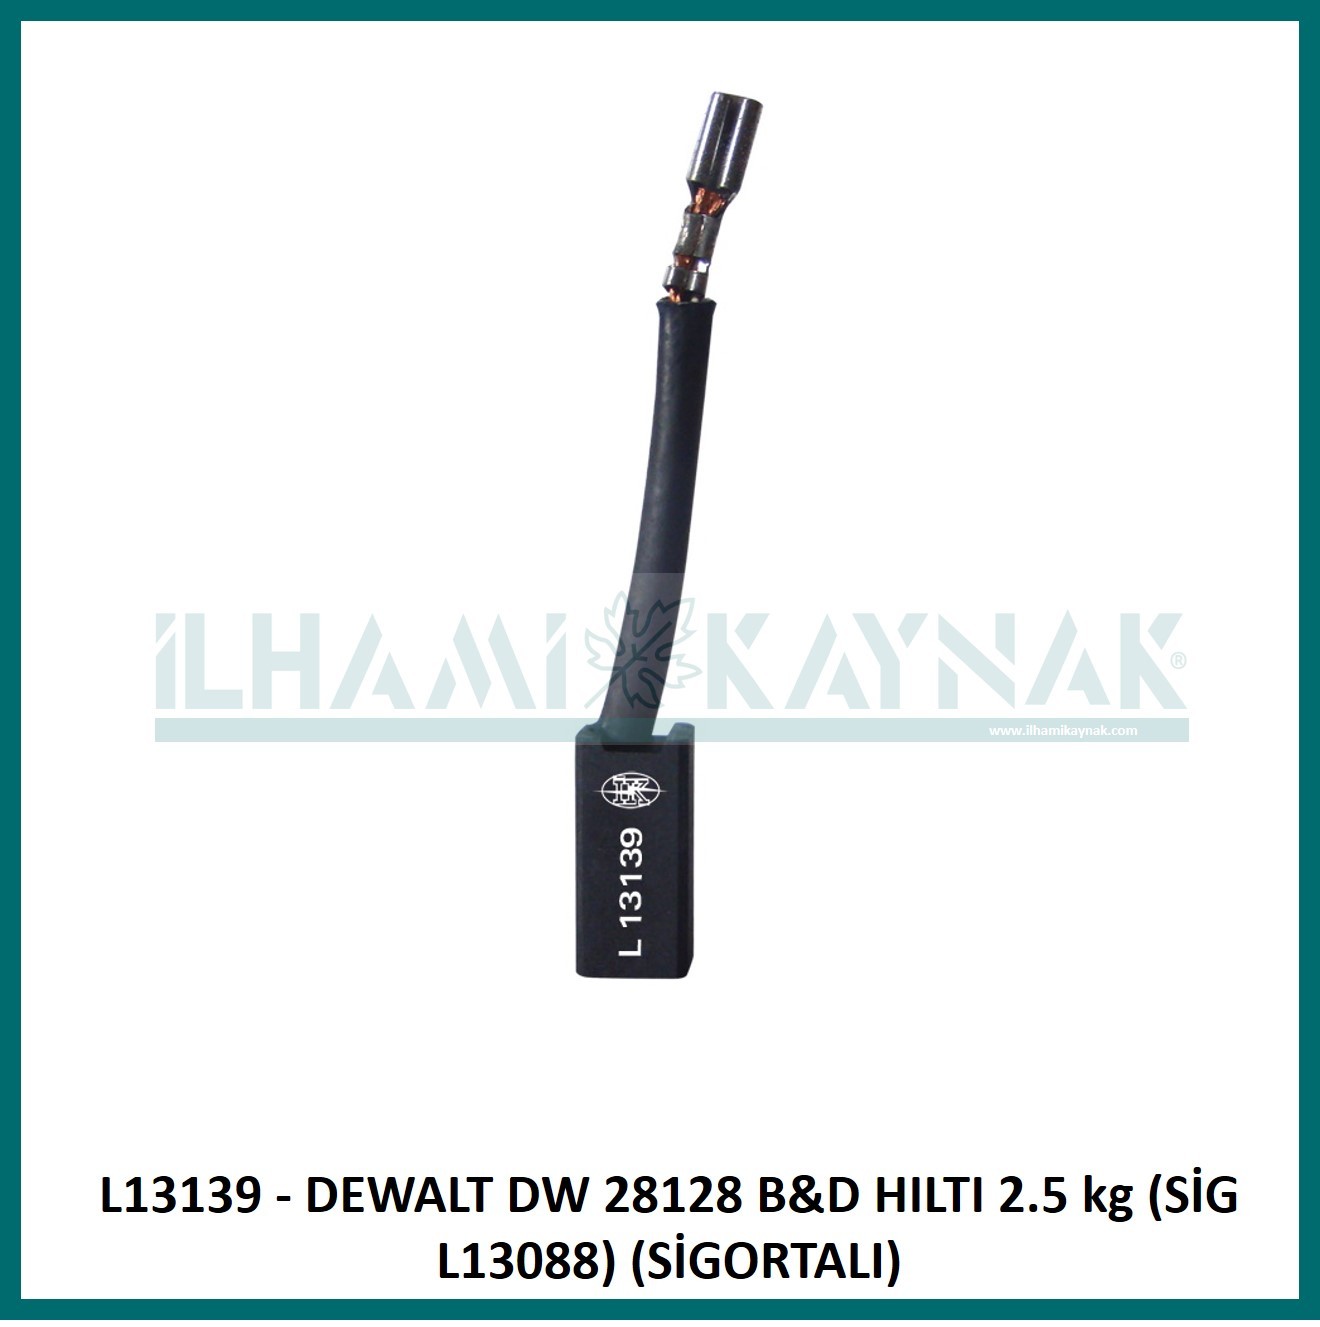 L13139 - DEWALT DW 28128 B&D HILTI 2.5 kg (SİG L13088) (SİGORTALI) - 6*8*18 mm - 100 Adet